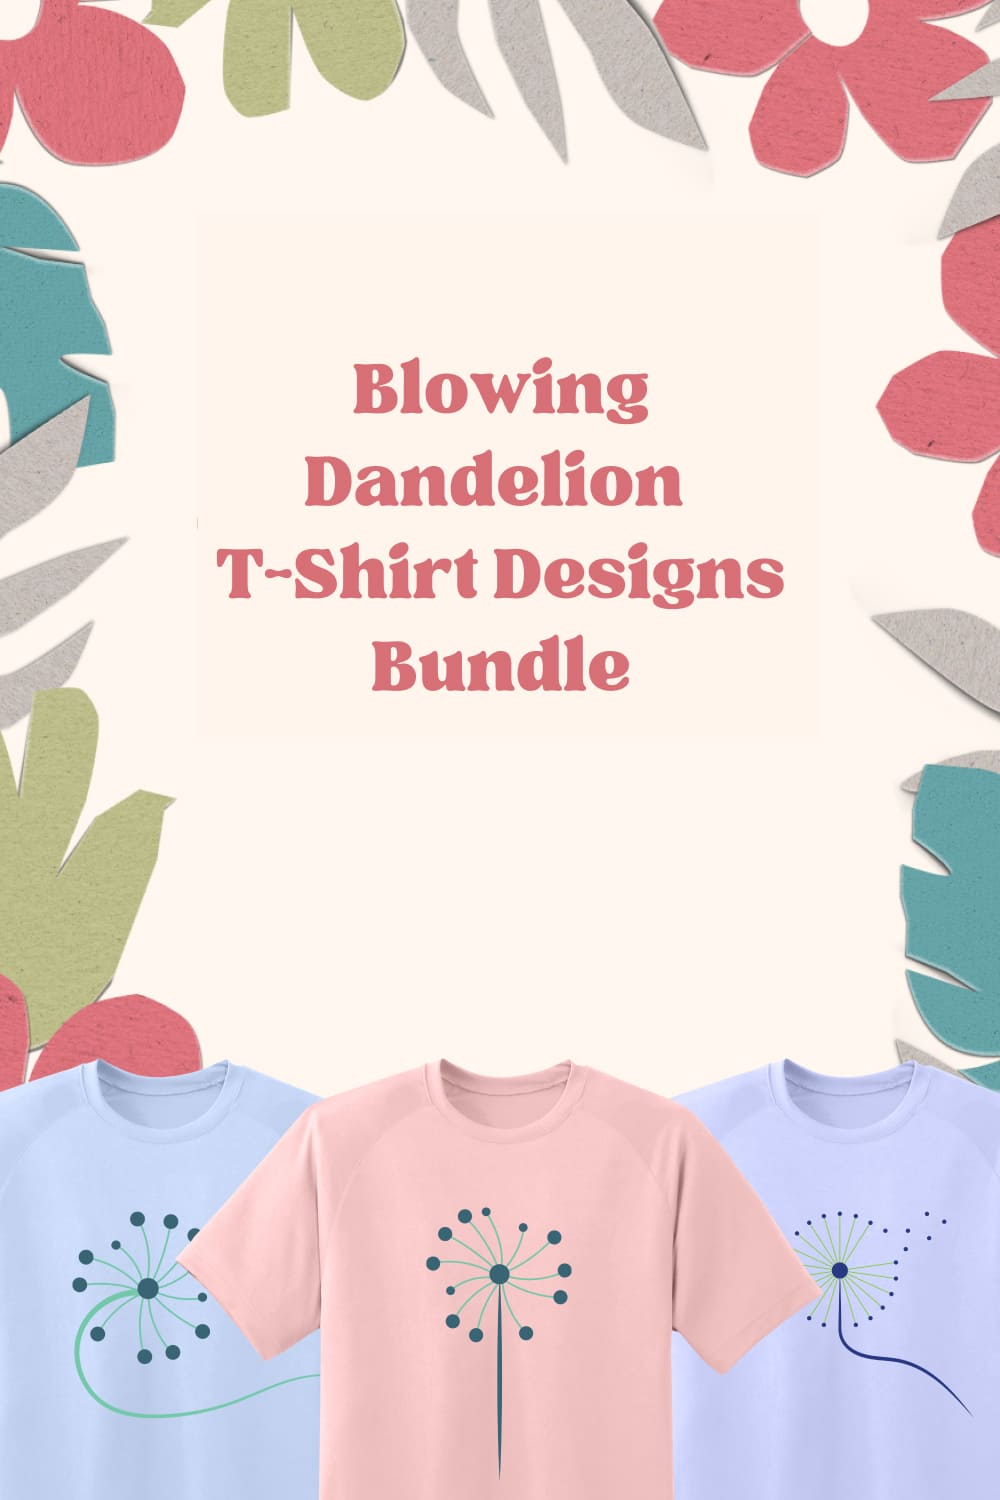 Blowing Dandelion Dandelion T-shirt Designs Bundle - Pinterest.